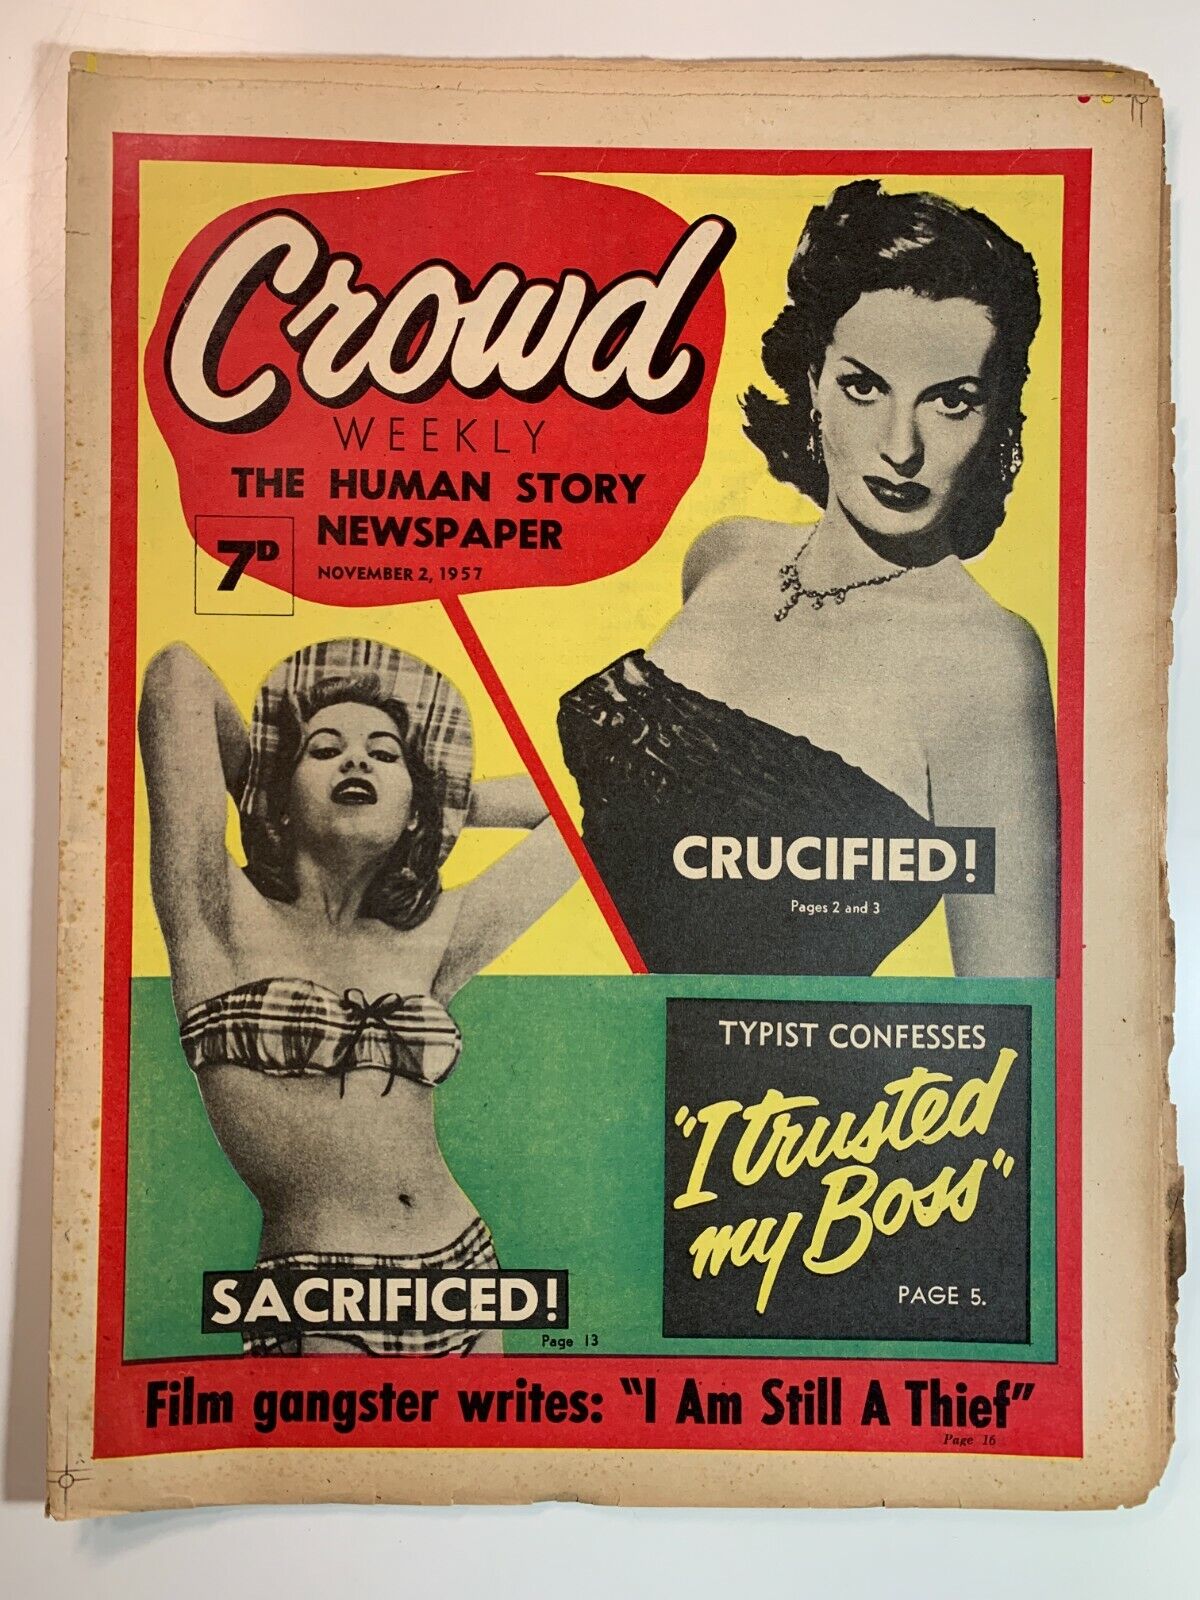 Vintage UK - Crowd Weekly - The Human Story Newspaper 2 November 1957